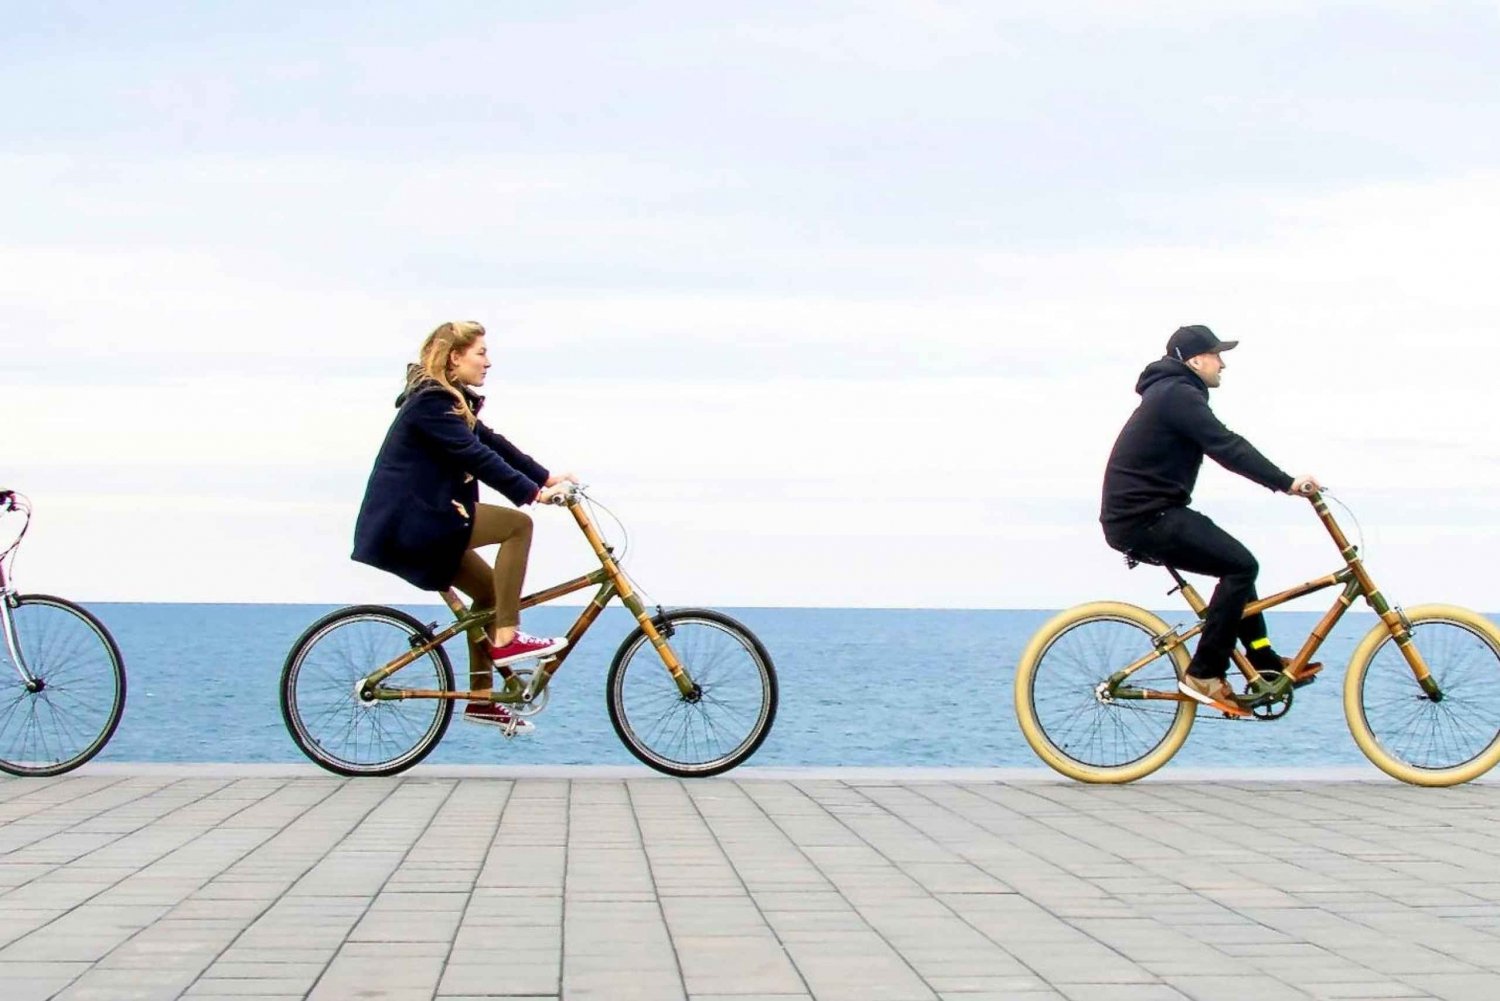 Barcellona: tour dei momenti salienti privati in Bamboo Bicycle